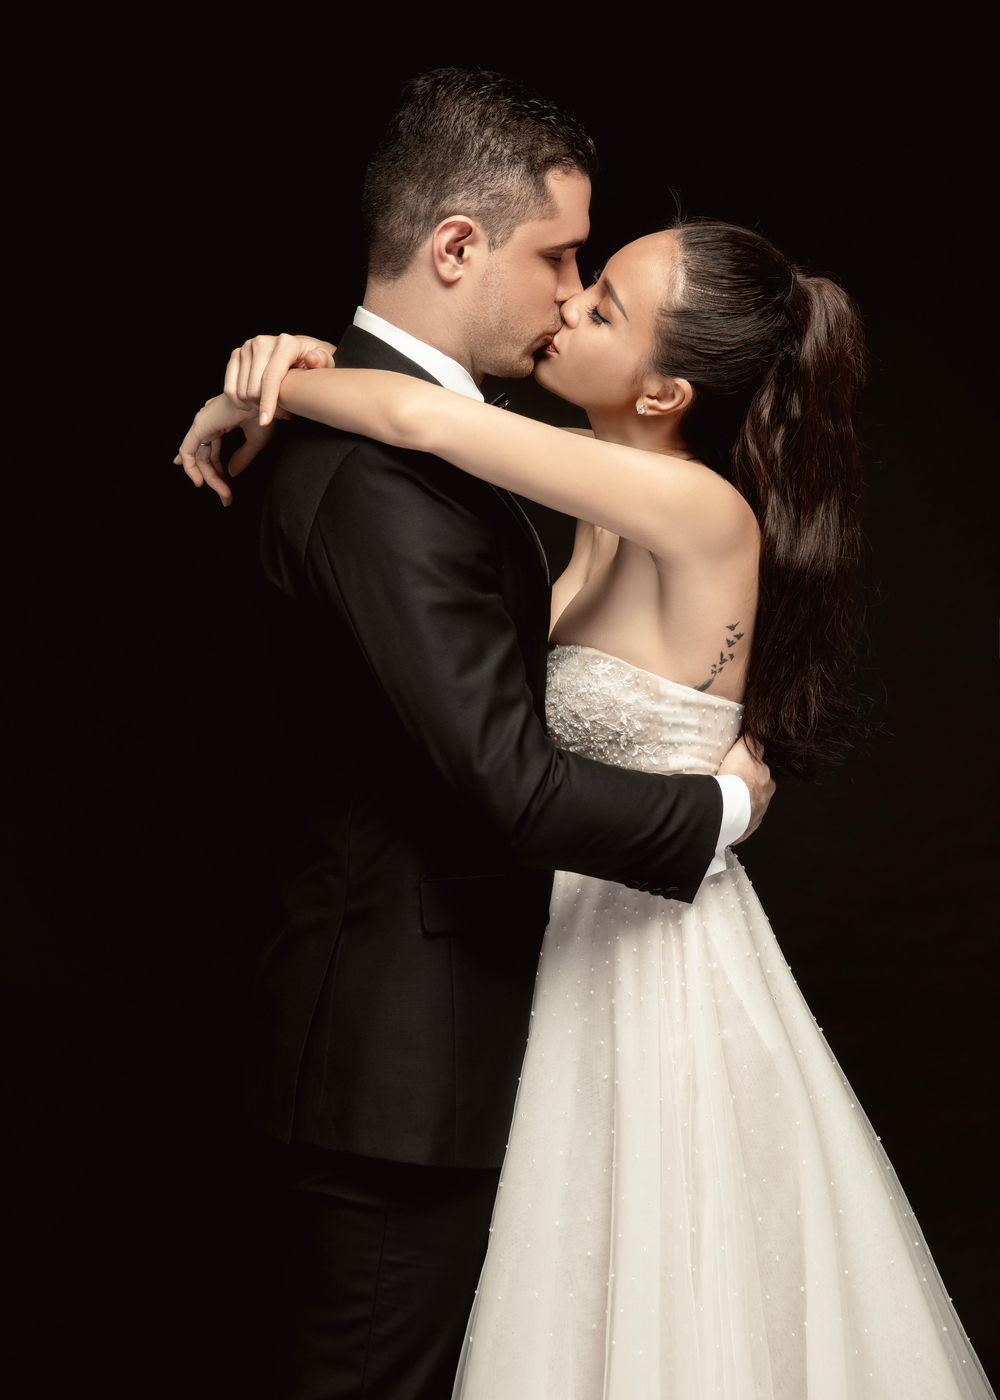 Ảnh cưới lãng mạn như phim Hàn của siêu mẫu Phương Mai và chồng Tây - Tin sao Viet - Tin tuc sao Viet - Scandal sao Viet - Tin tuc cua Sao - Tin cua Sao